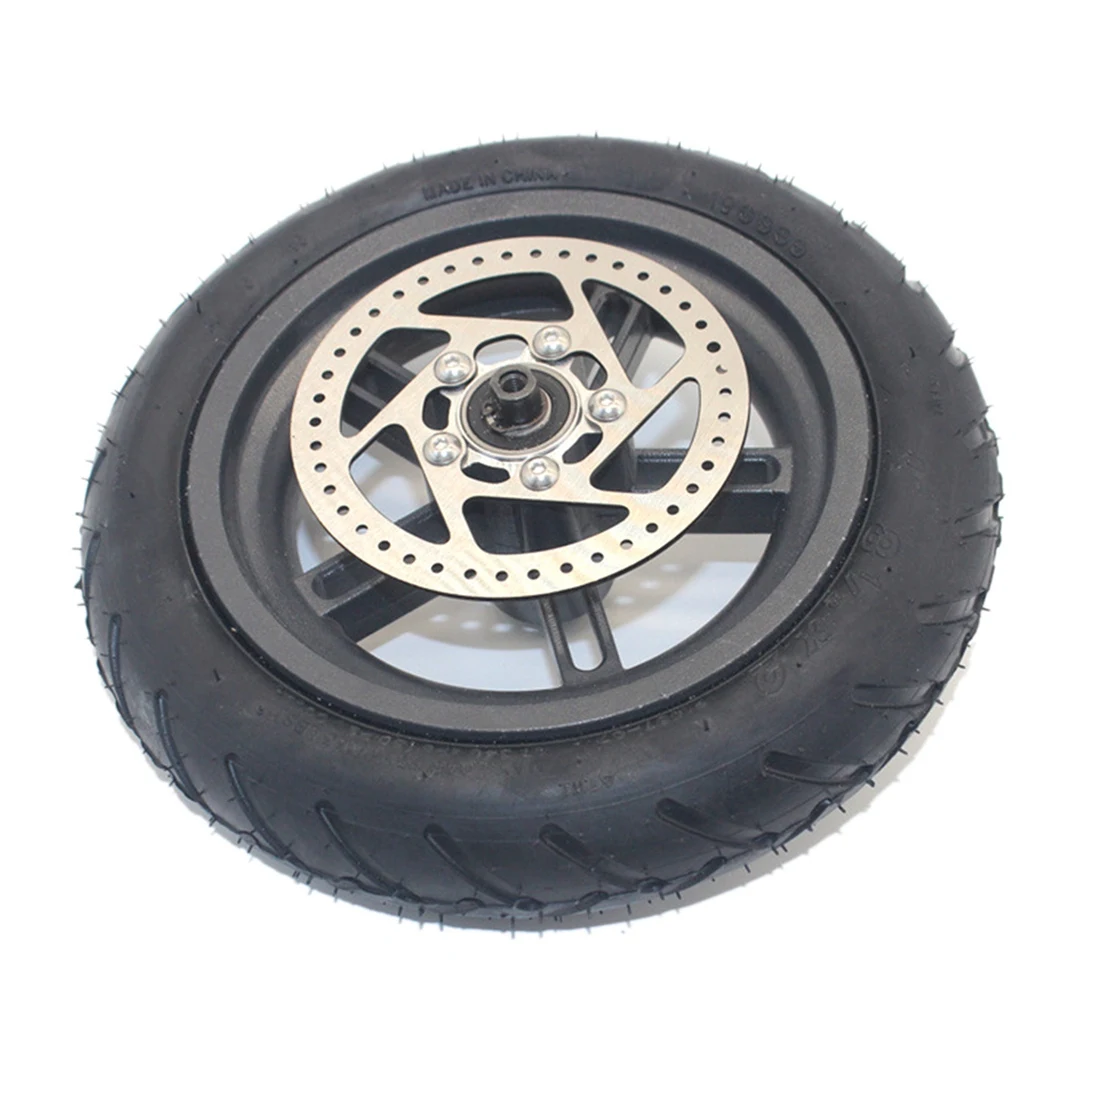 

Заднее колесо 8,5 дюйма для Pro + шины + дисковый тормоз 110 мм Задняя шина для электроскутера Антипрокольная шина